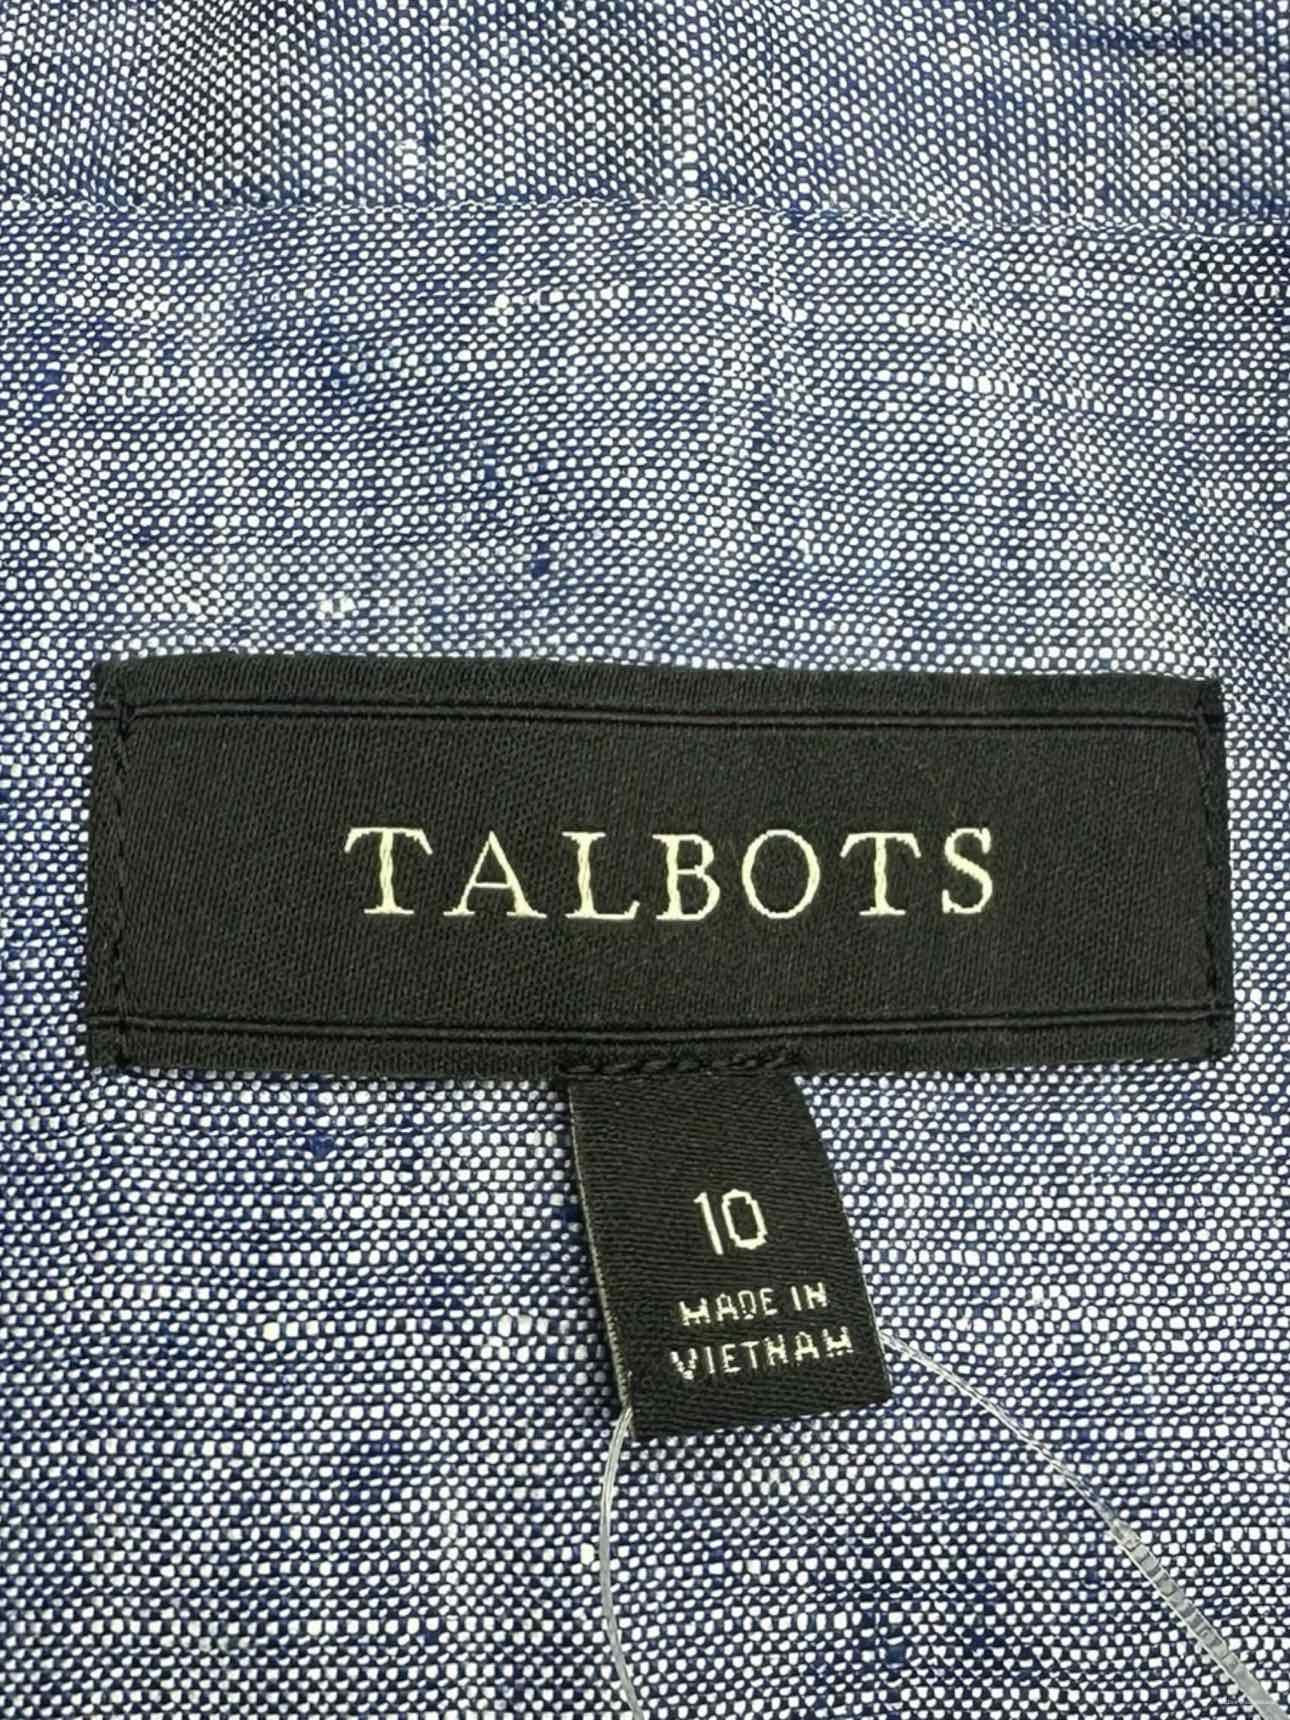 Talbots Blue 100% Linen Blazer Size 10